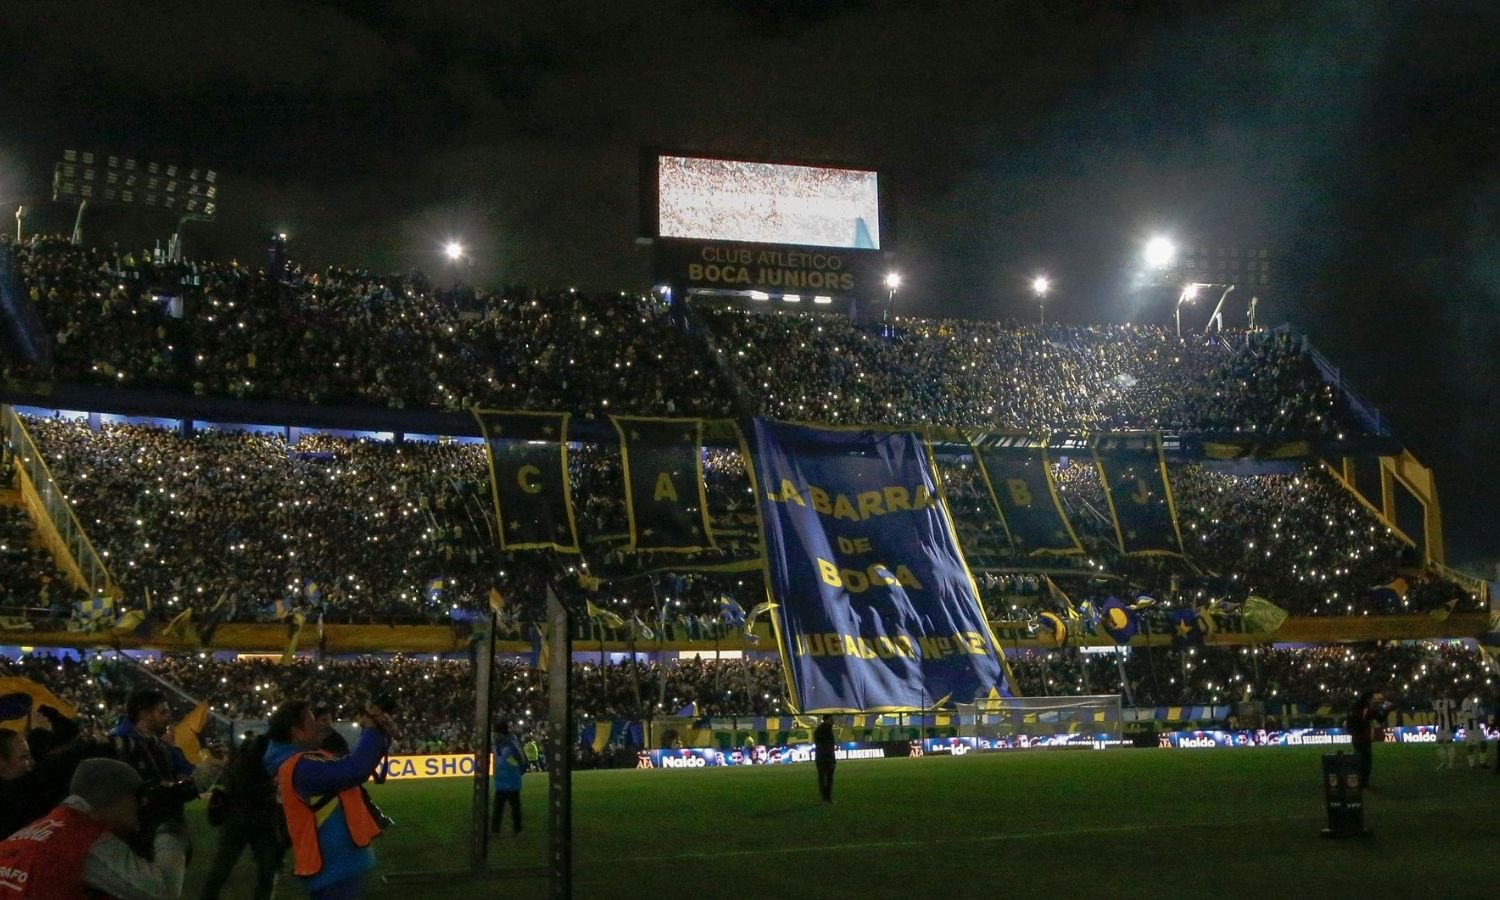 La número 12 hinchada de Boca Juniors